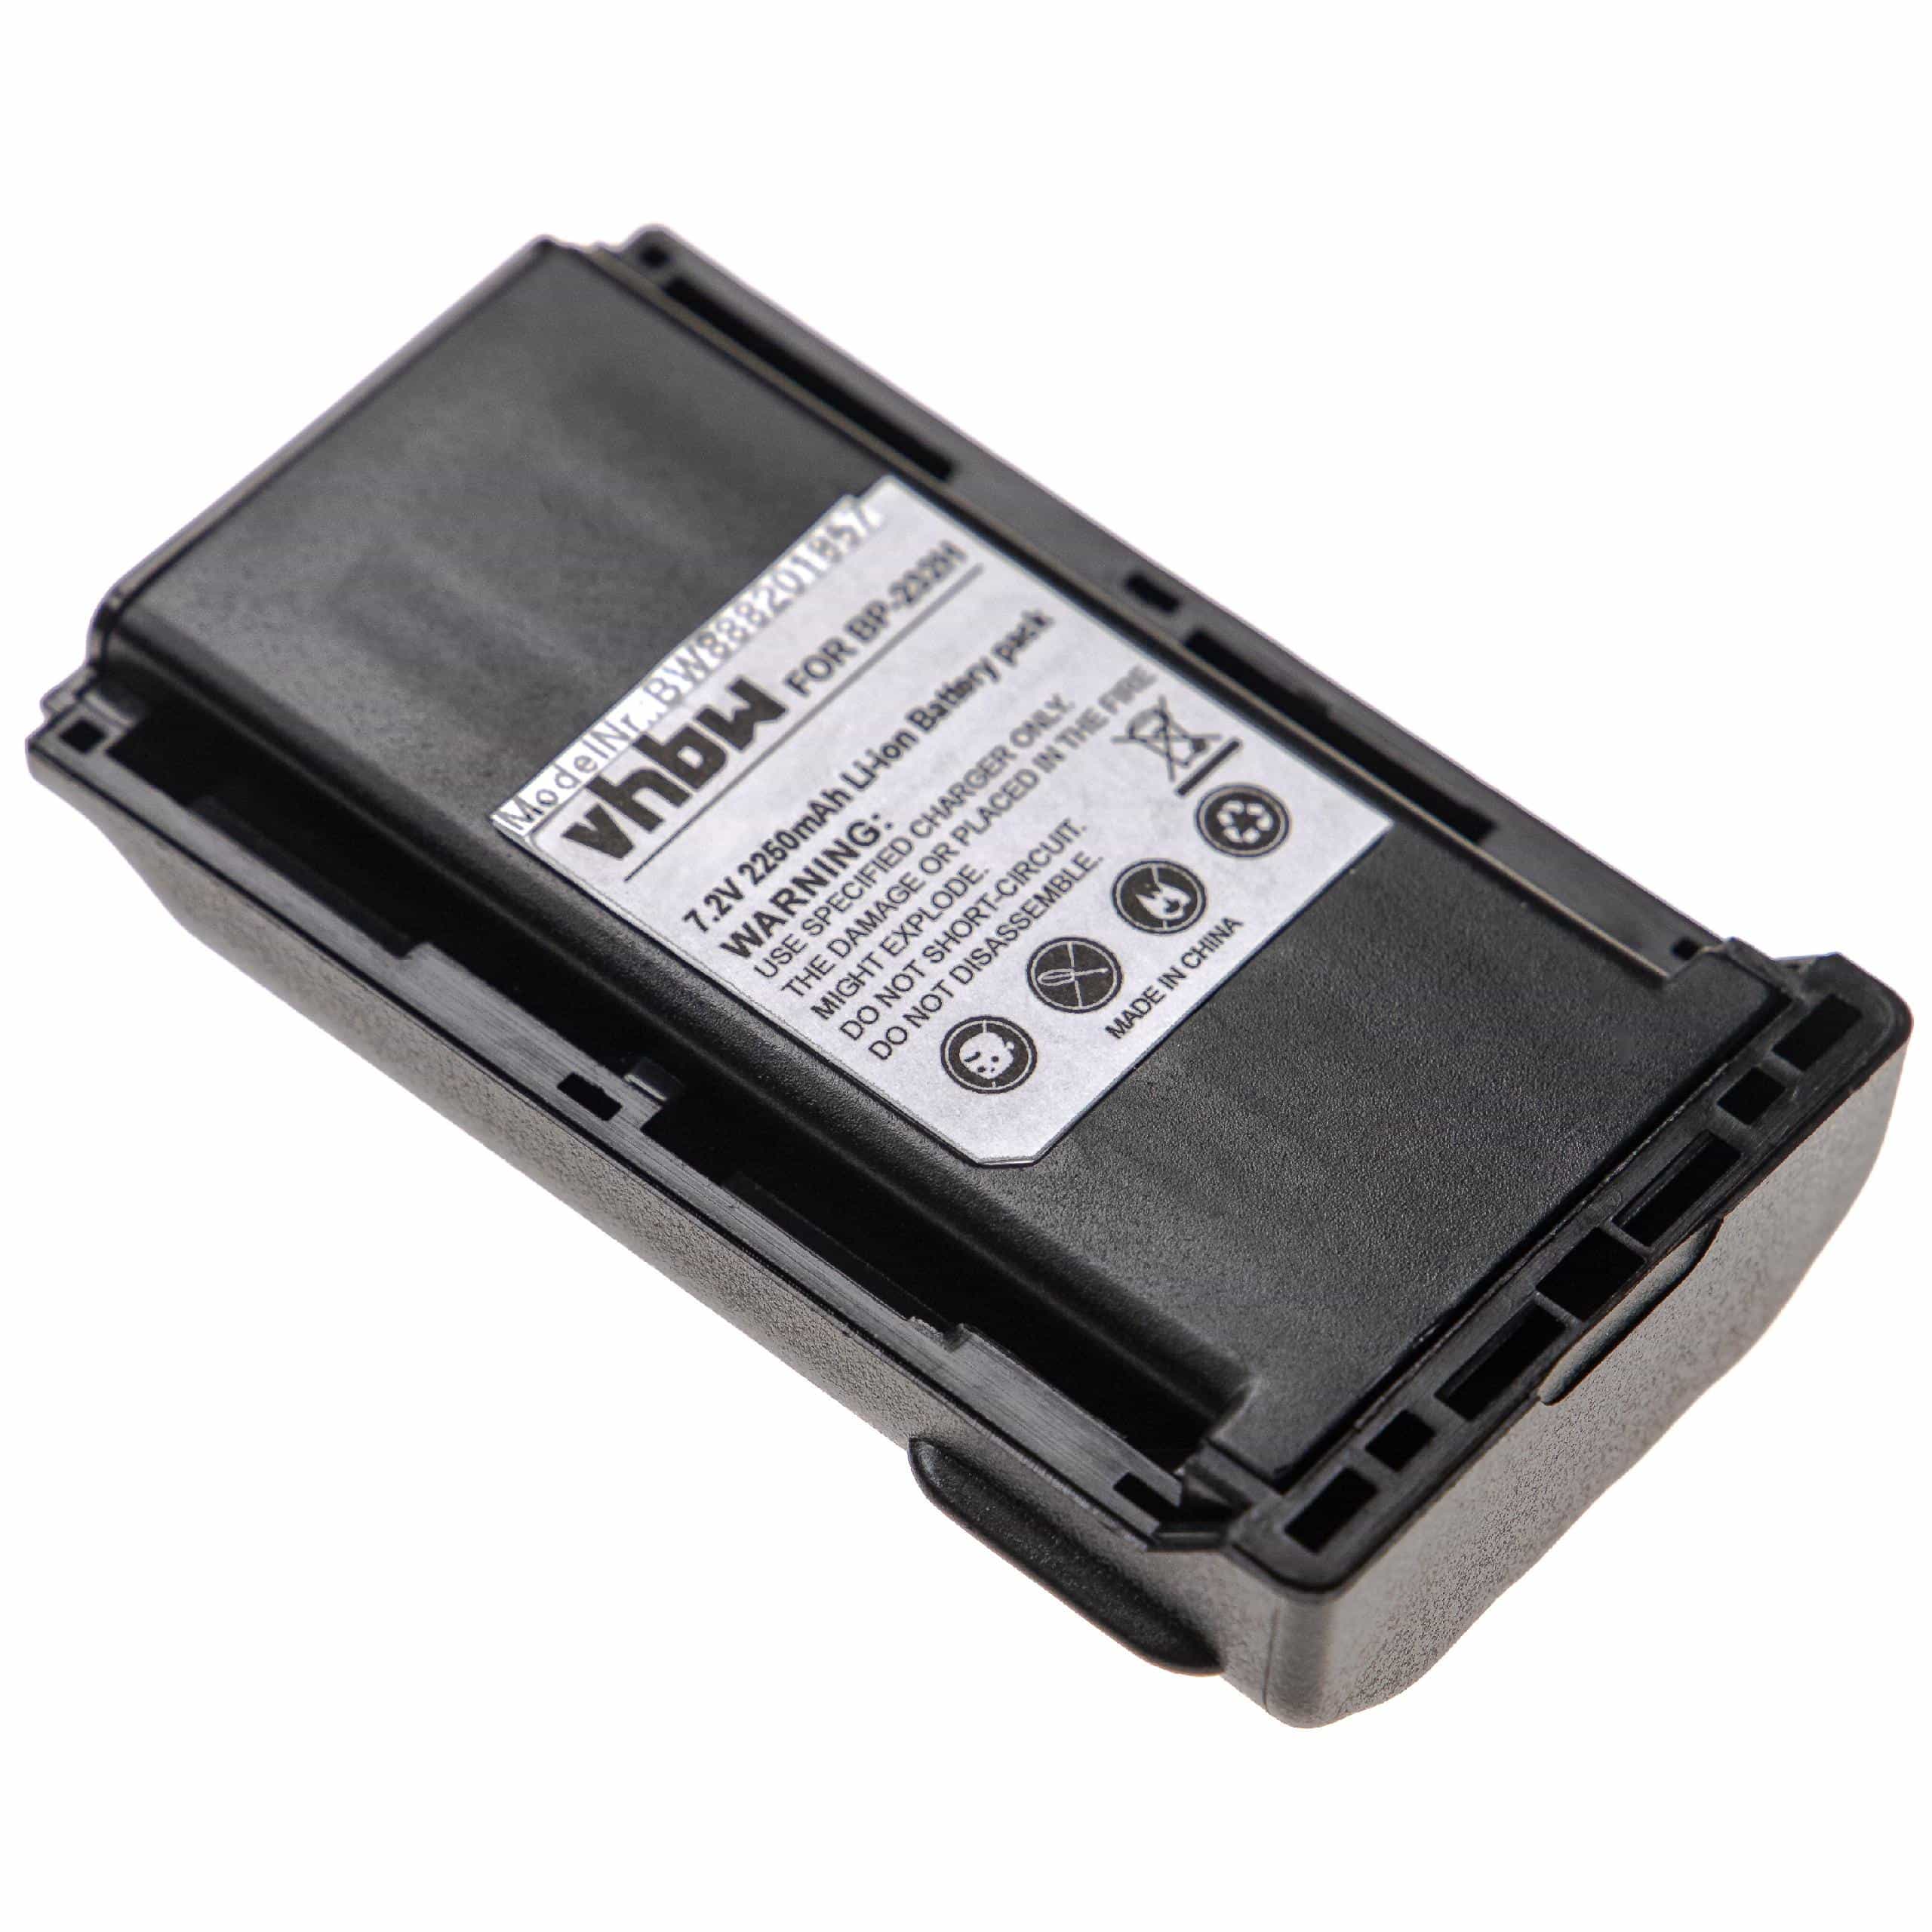 Batteria per dispositivo radio sostituisce Icom BJ-2000, BP-231, BP-230, BP-230N Icom - 2250mAh 7,2V Li-Ion